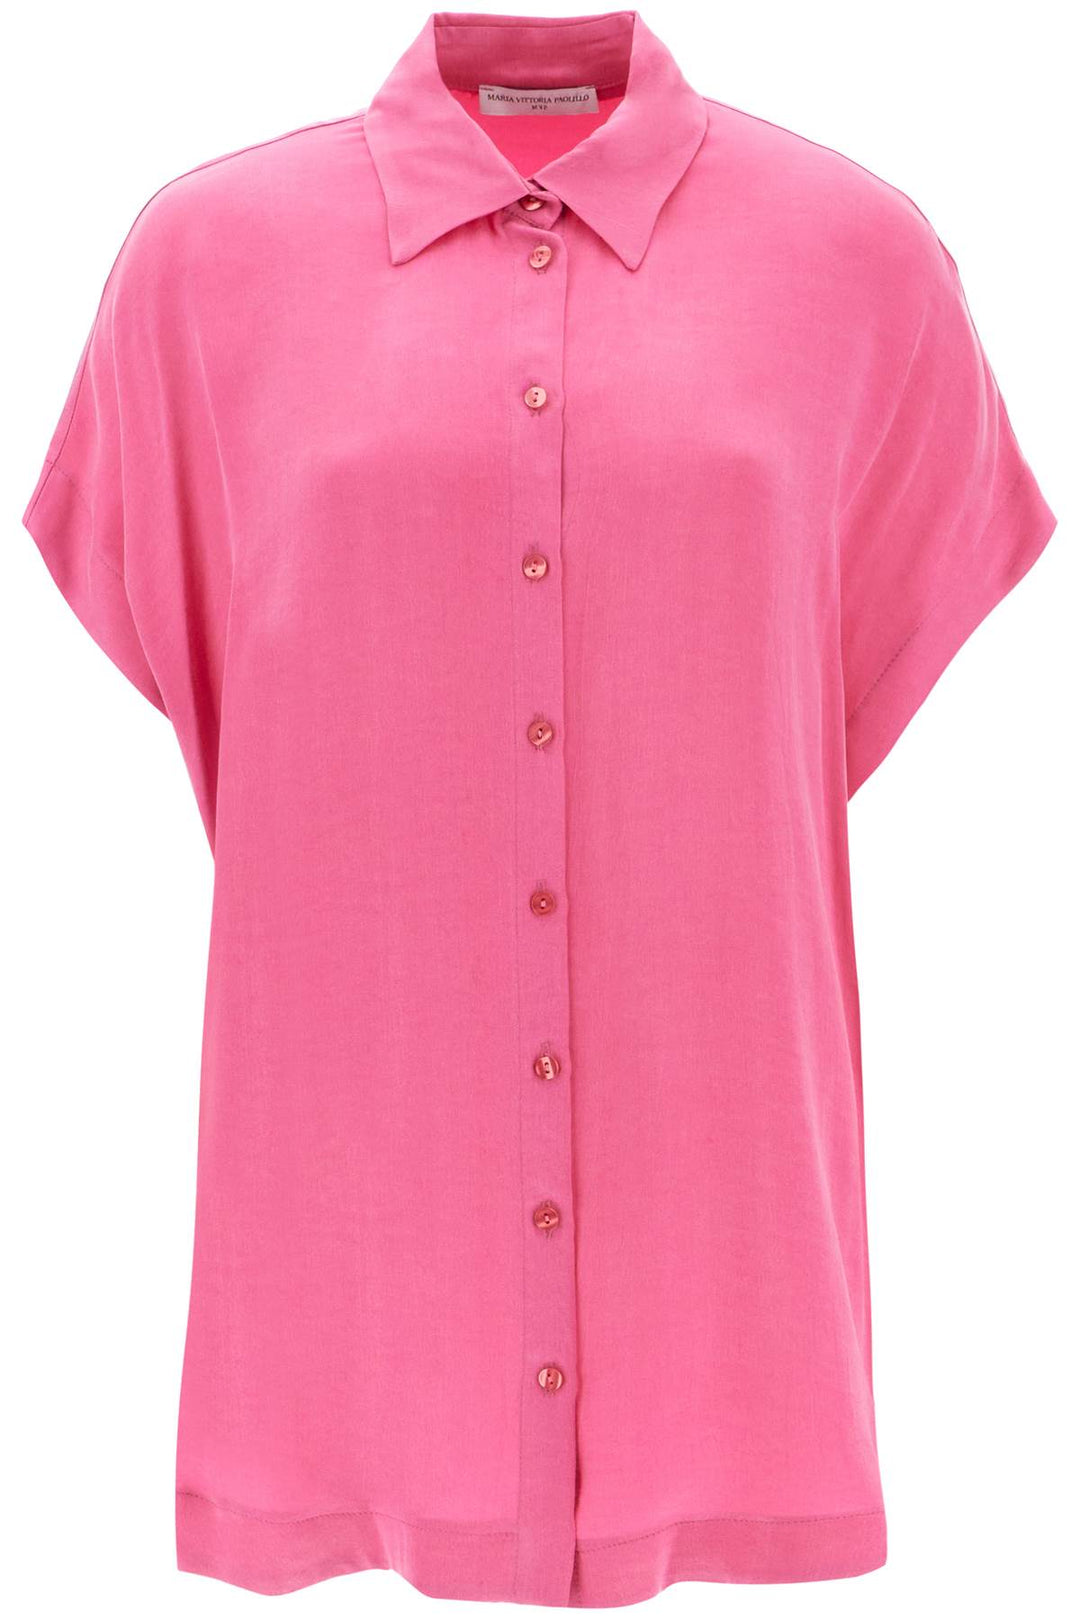 Mvp wardrobe 'santa cruz' short-sleeved shirt-0